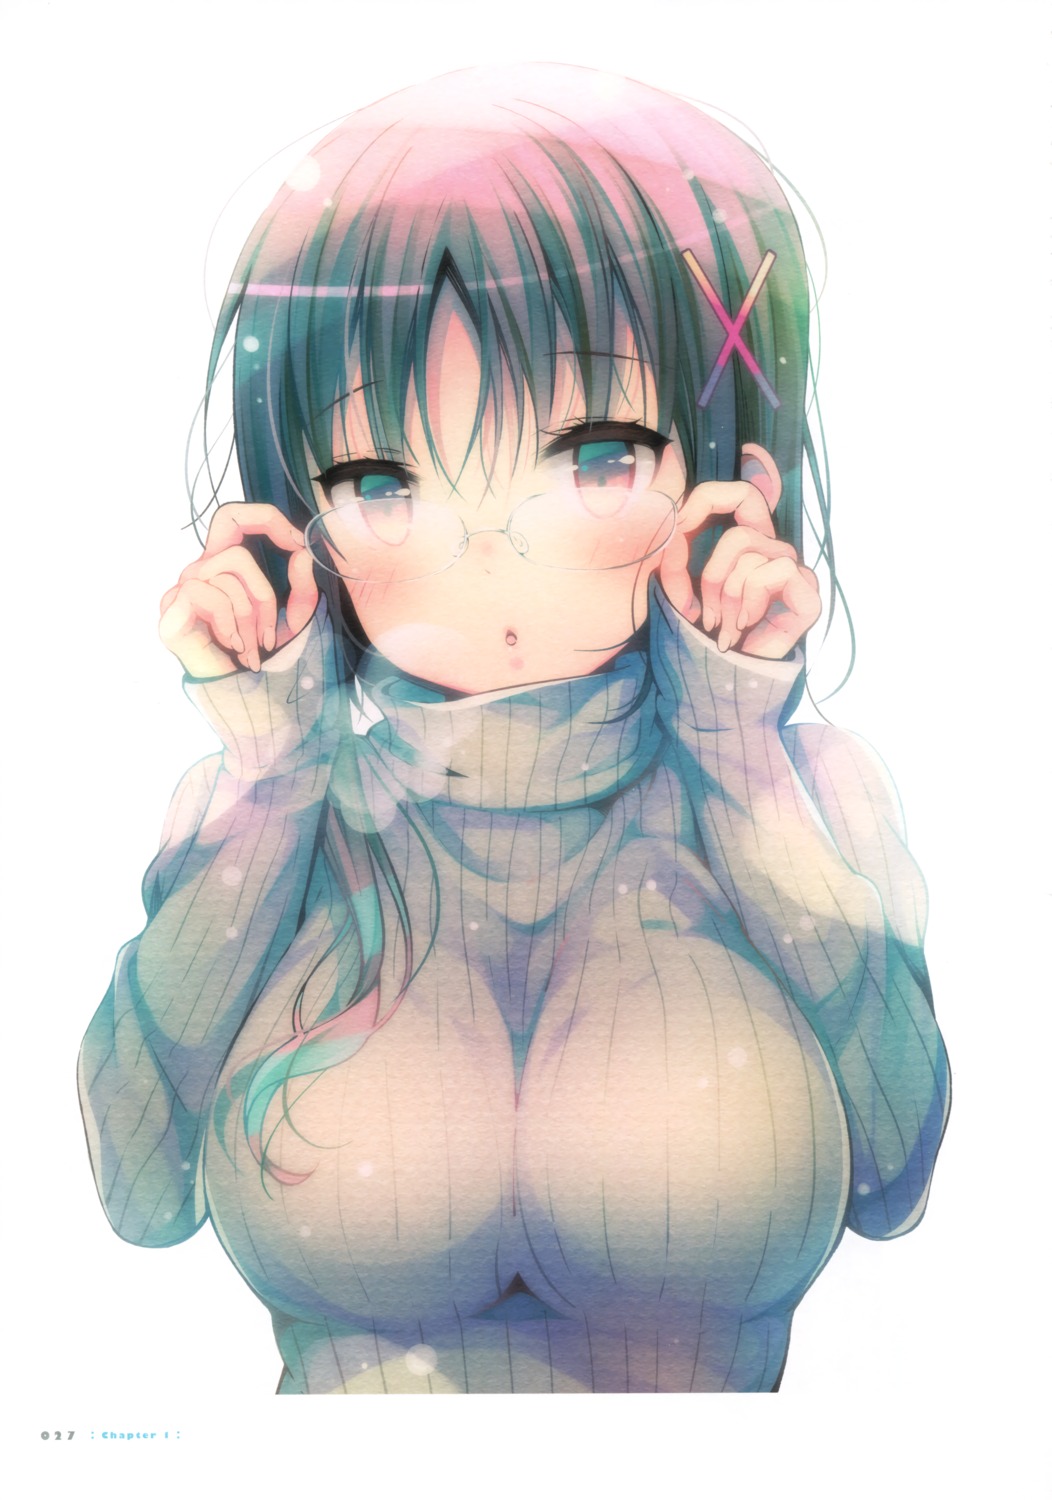 hagino_chiaki hinako_note megane mitsuki_(mangaka) sweater